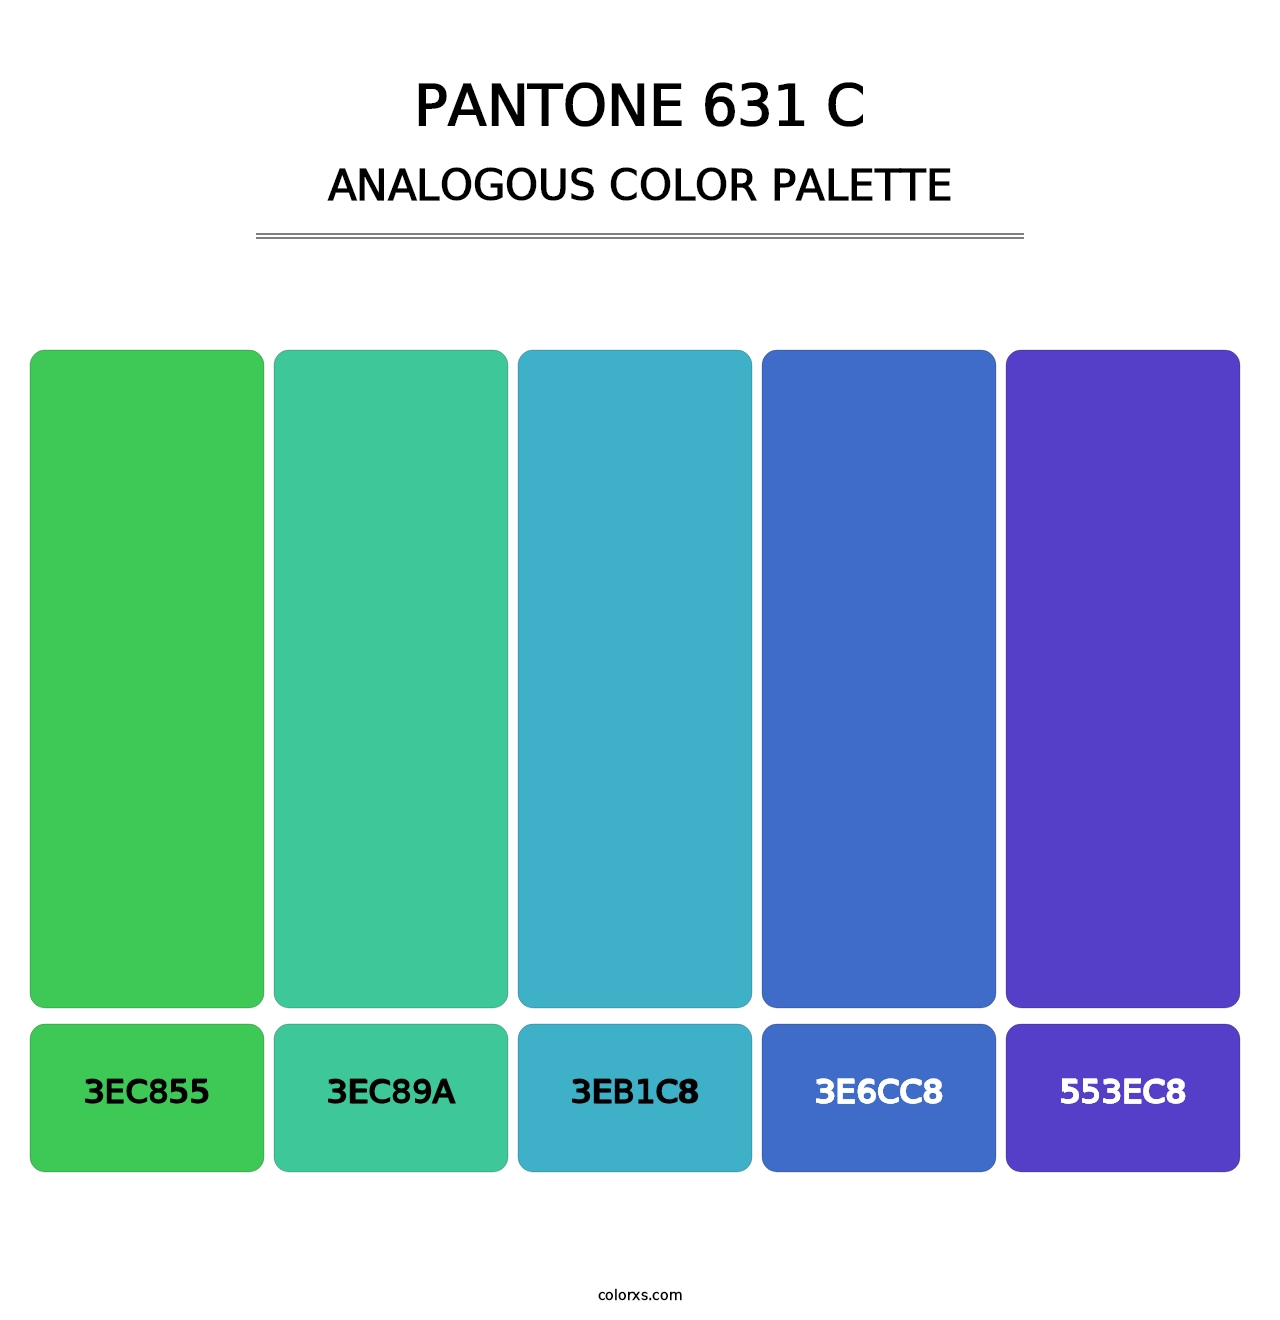 PANTONE 631 C - Analogous Color Palette